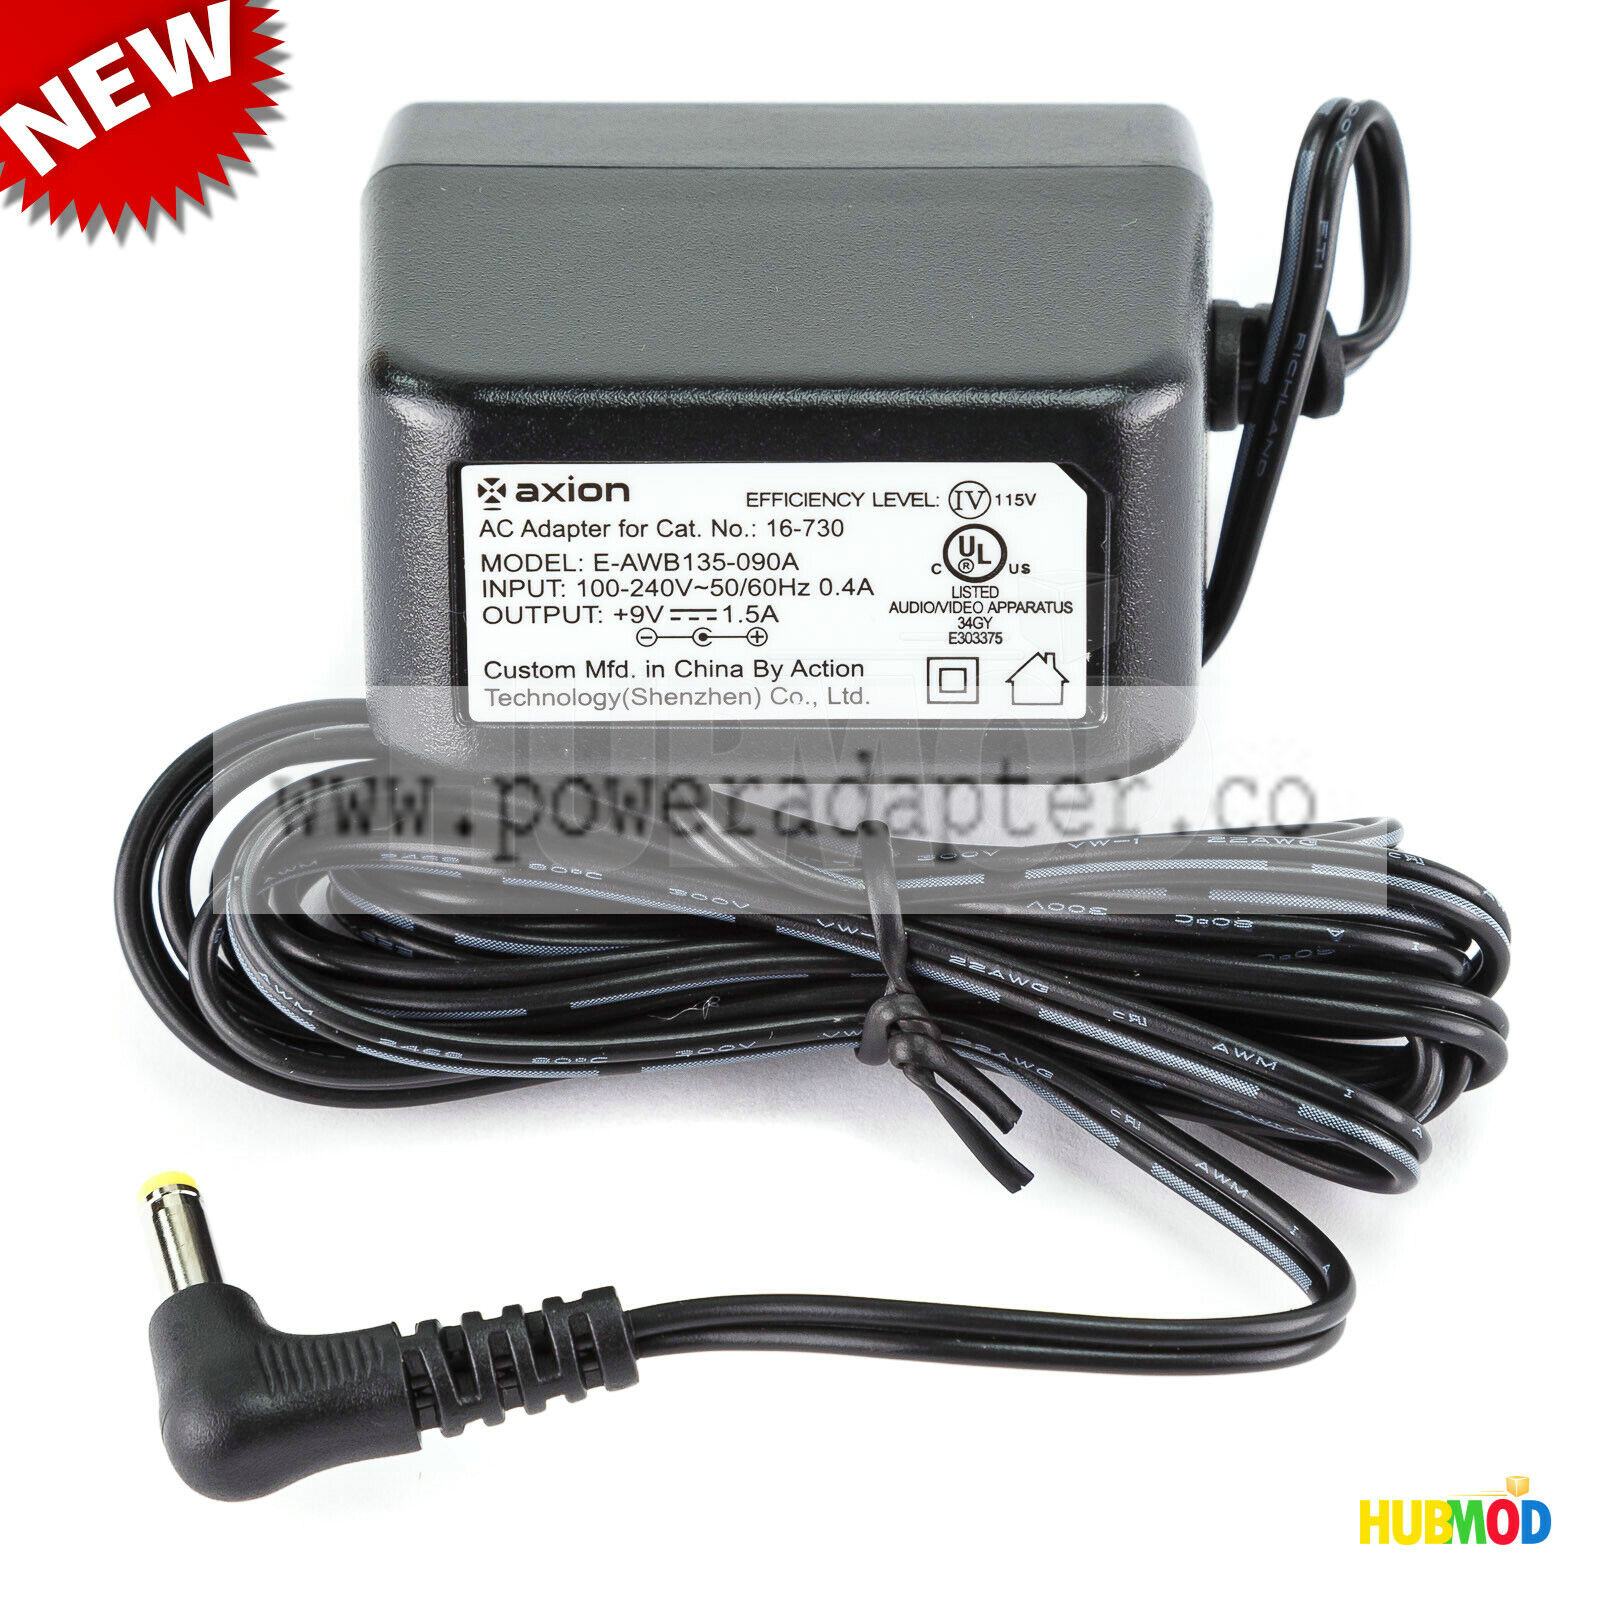 Genuine Axion E-AWB135-090A AC Power Adapter Output 9V 1.5A for DVD Player Brand: Axion MPN: E-AWB135-090A Output V